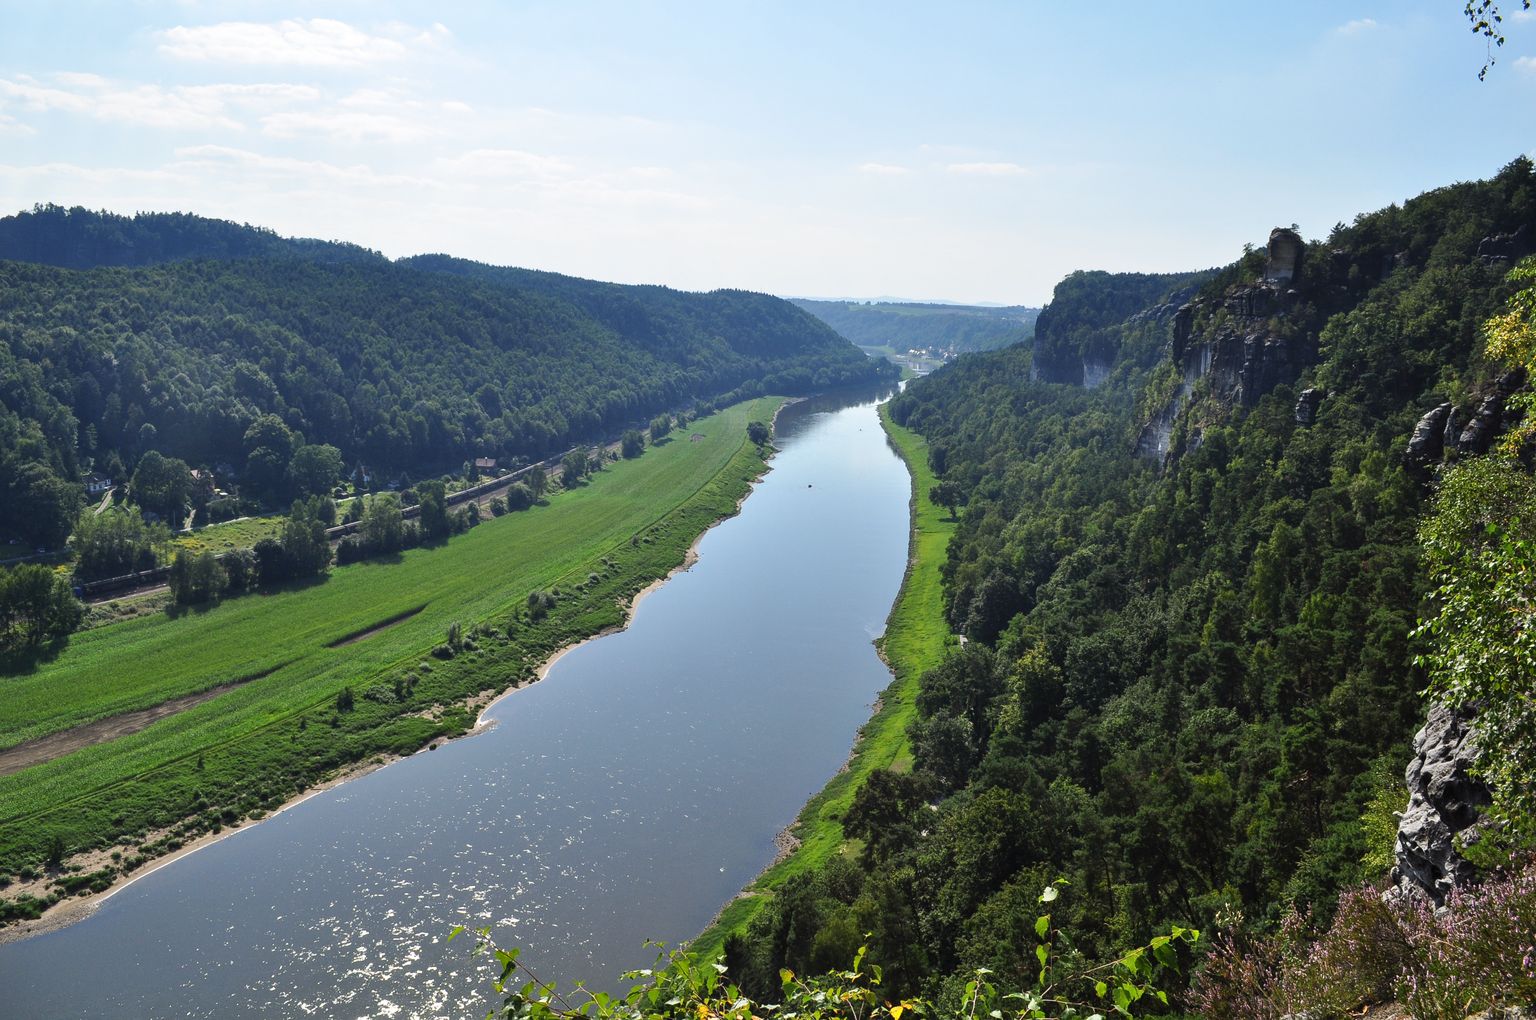 Elbe jõgi, mis voolab läbi Tšehhi ja Saksamaa ning suubub Põhjamerre